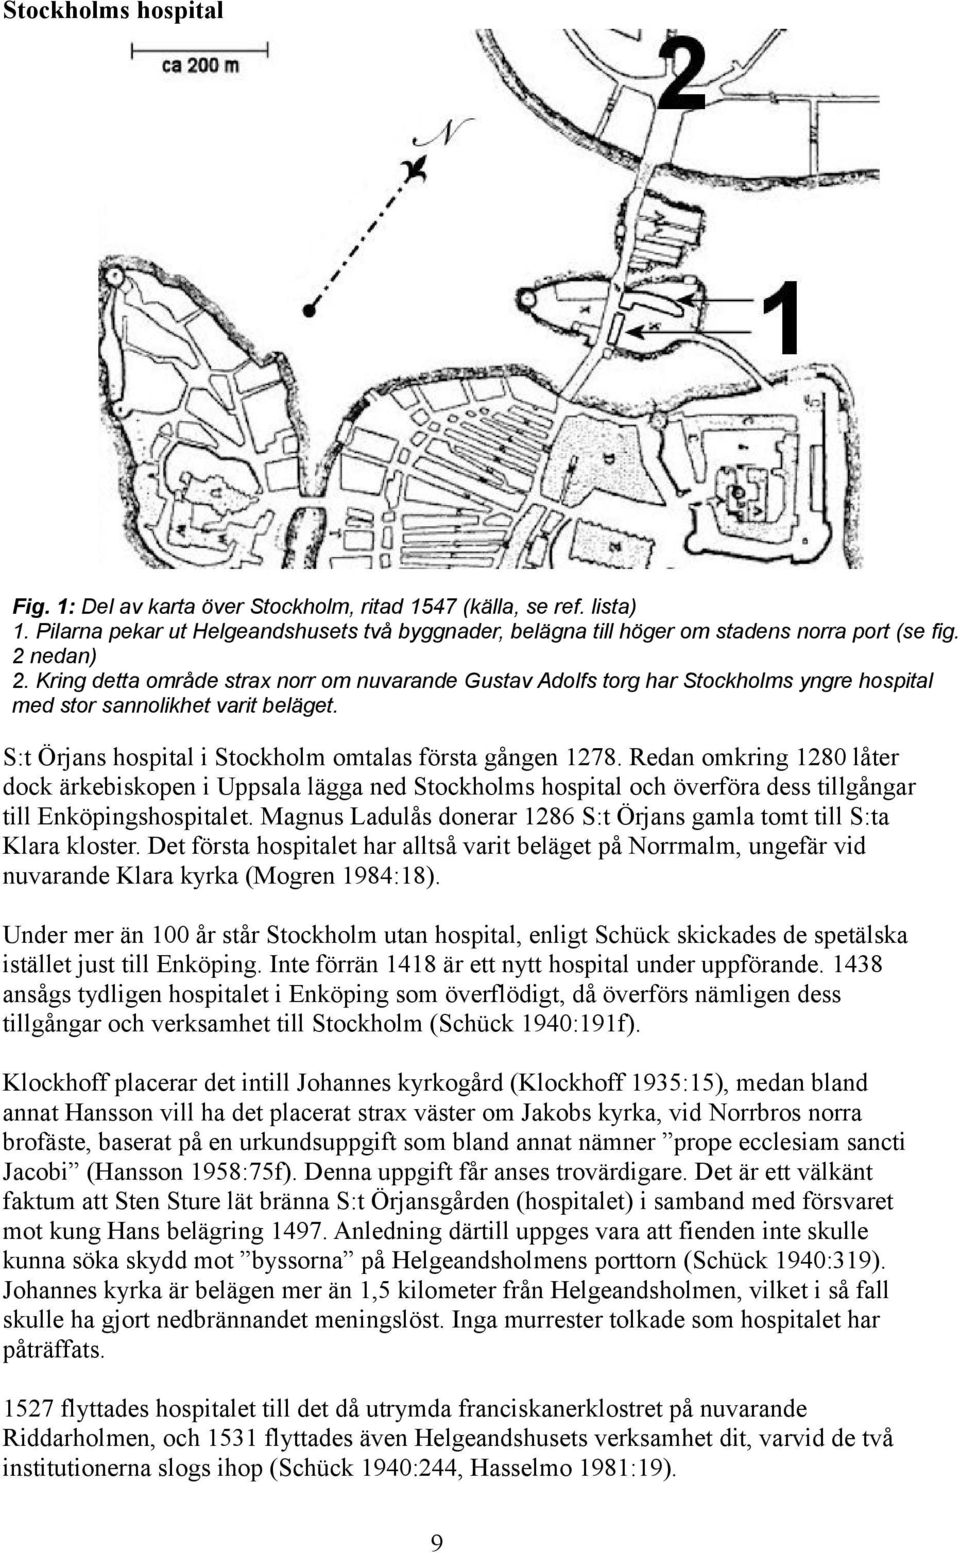 Redan omkring 1280 låter dock ärkebiskopen i Uppsala lägga ned Stockholms hospital och överföra dess tillgångar till Enköpingshospitalet.